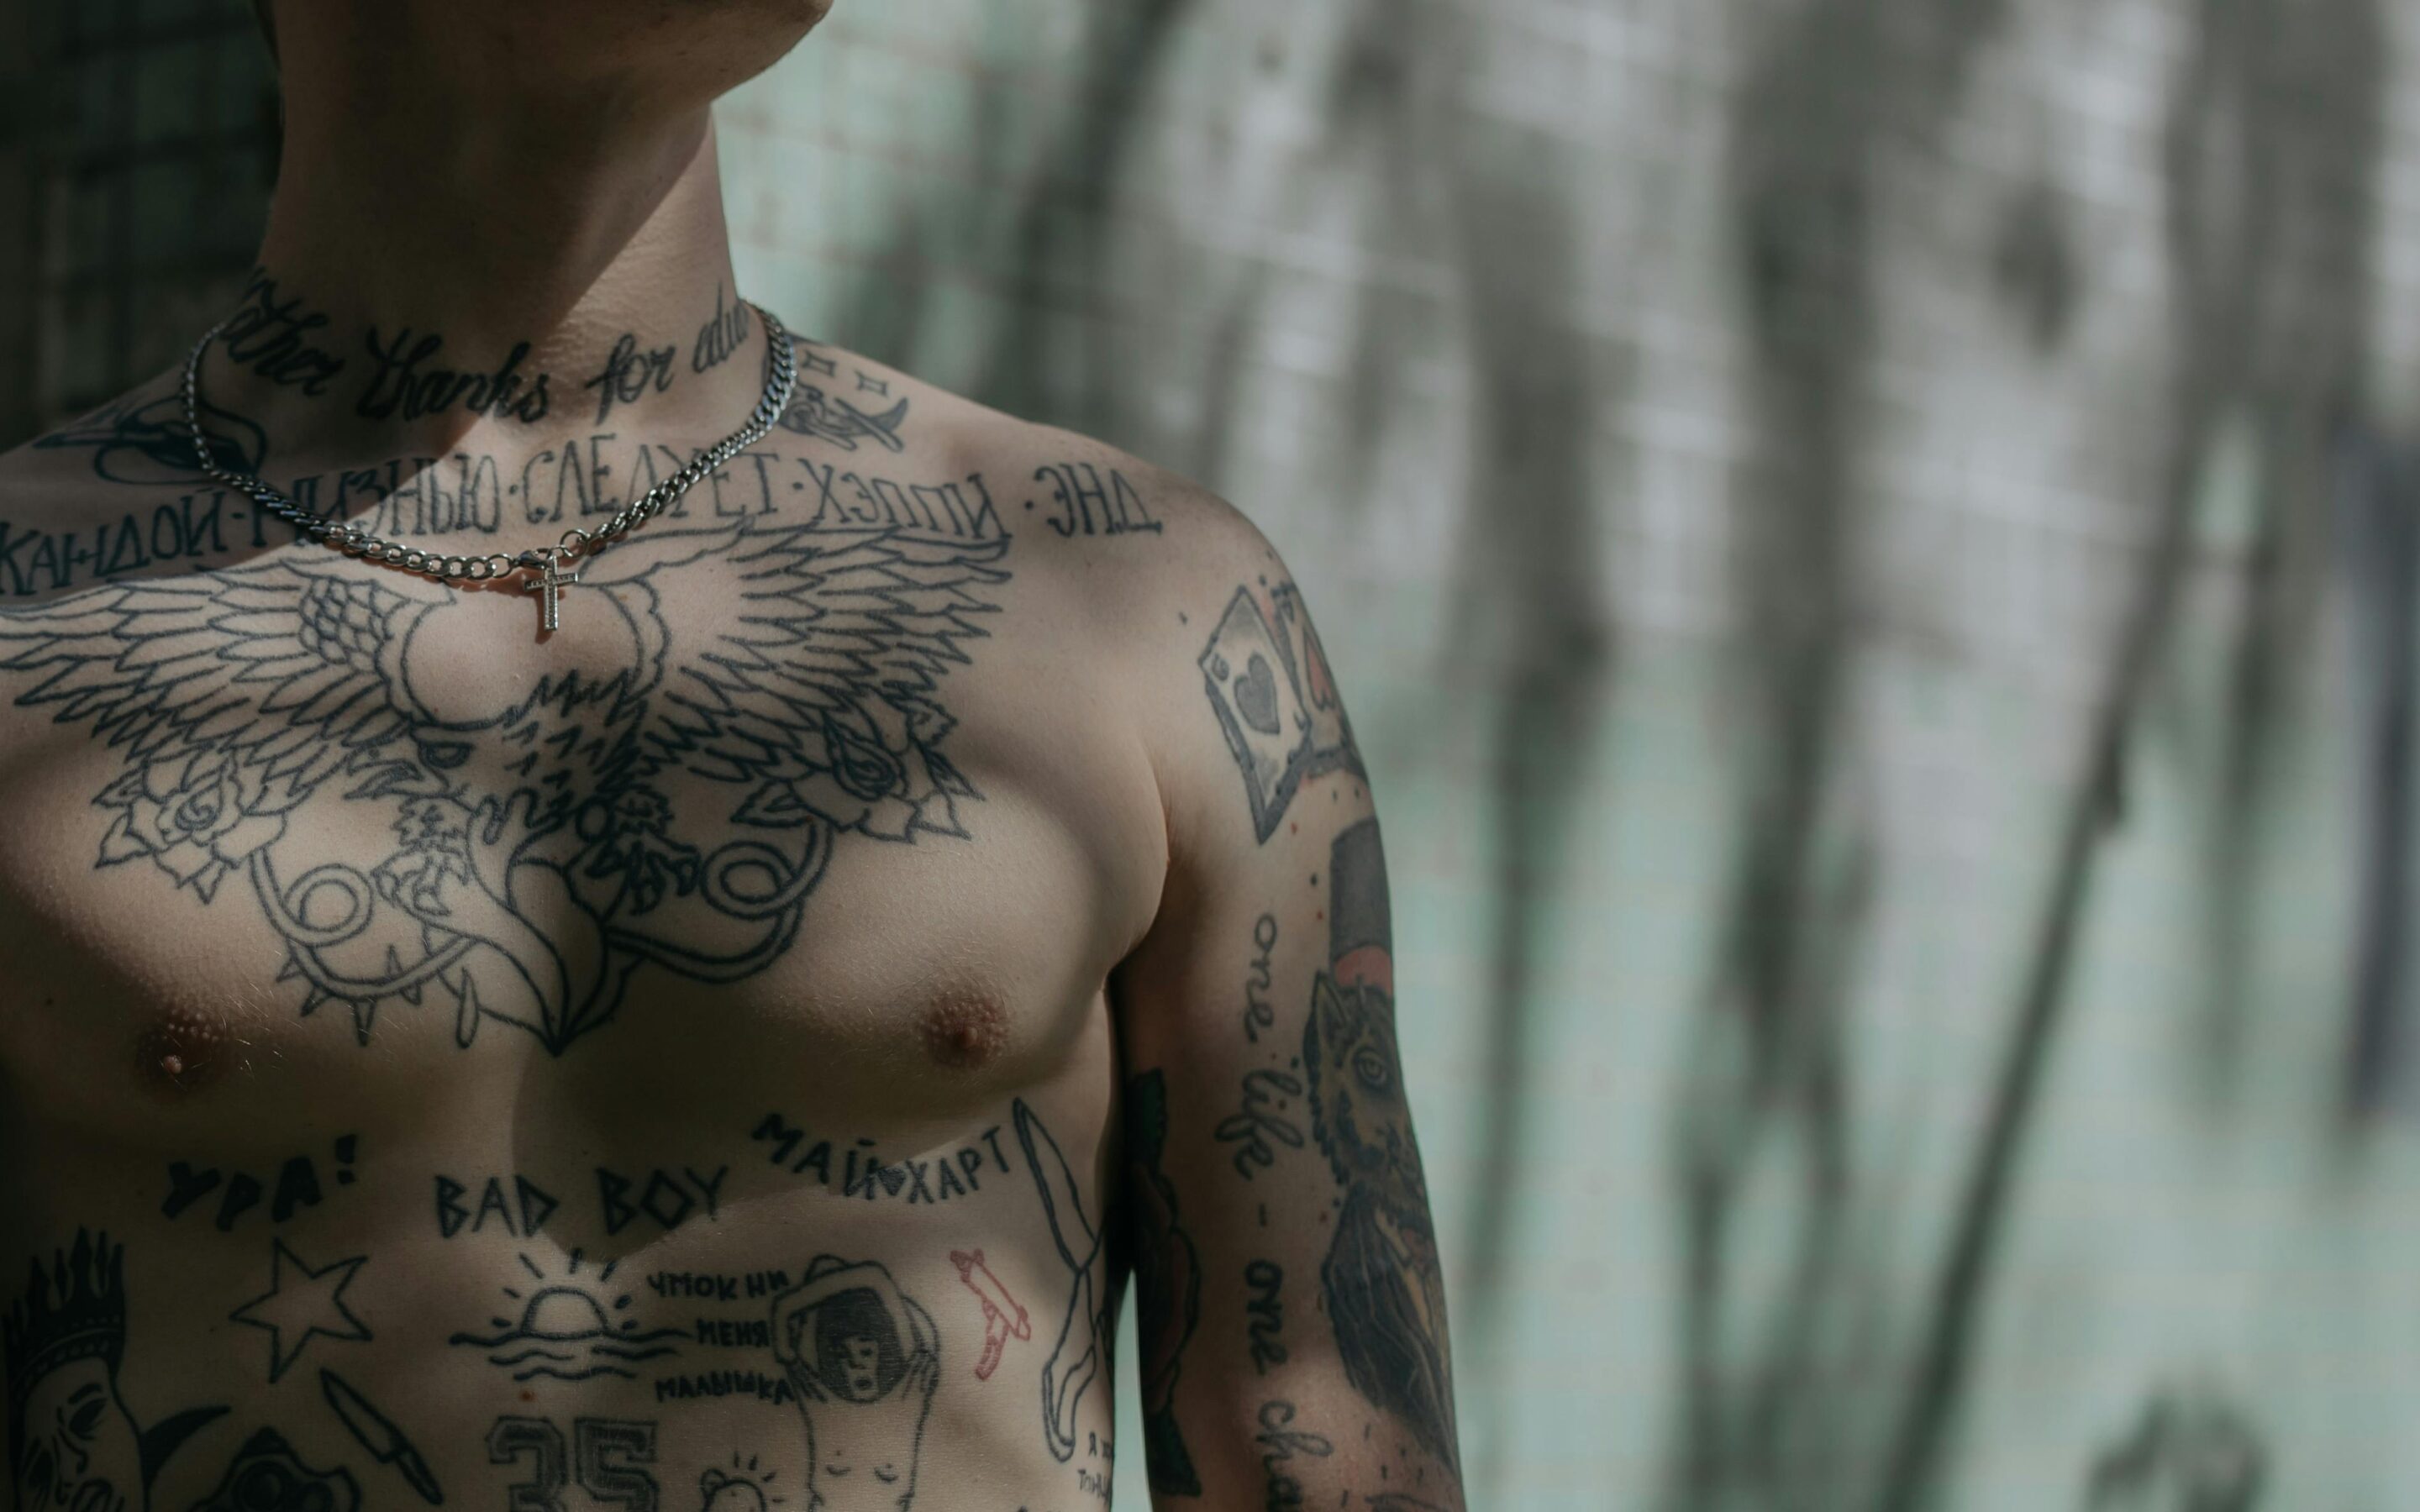 Powikłania po tatuażu: reakcja alergiczna, obrzęk, a nawet kurzajki. Jak ich uniknąć? [WIDEO]